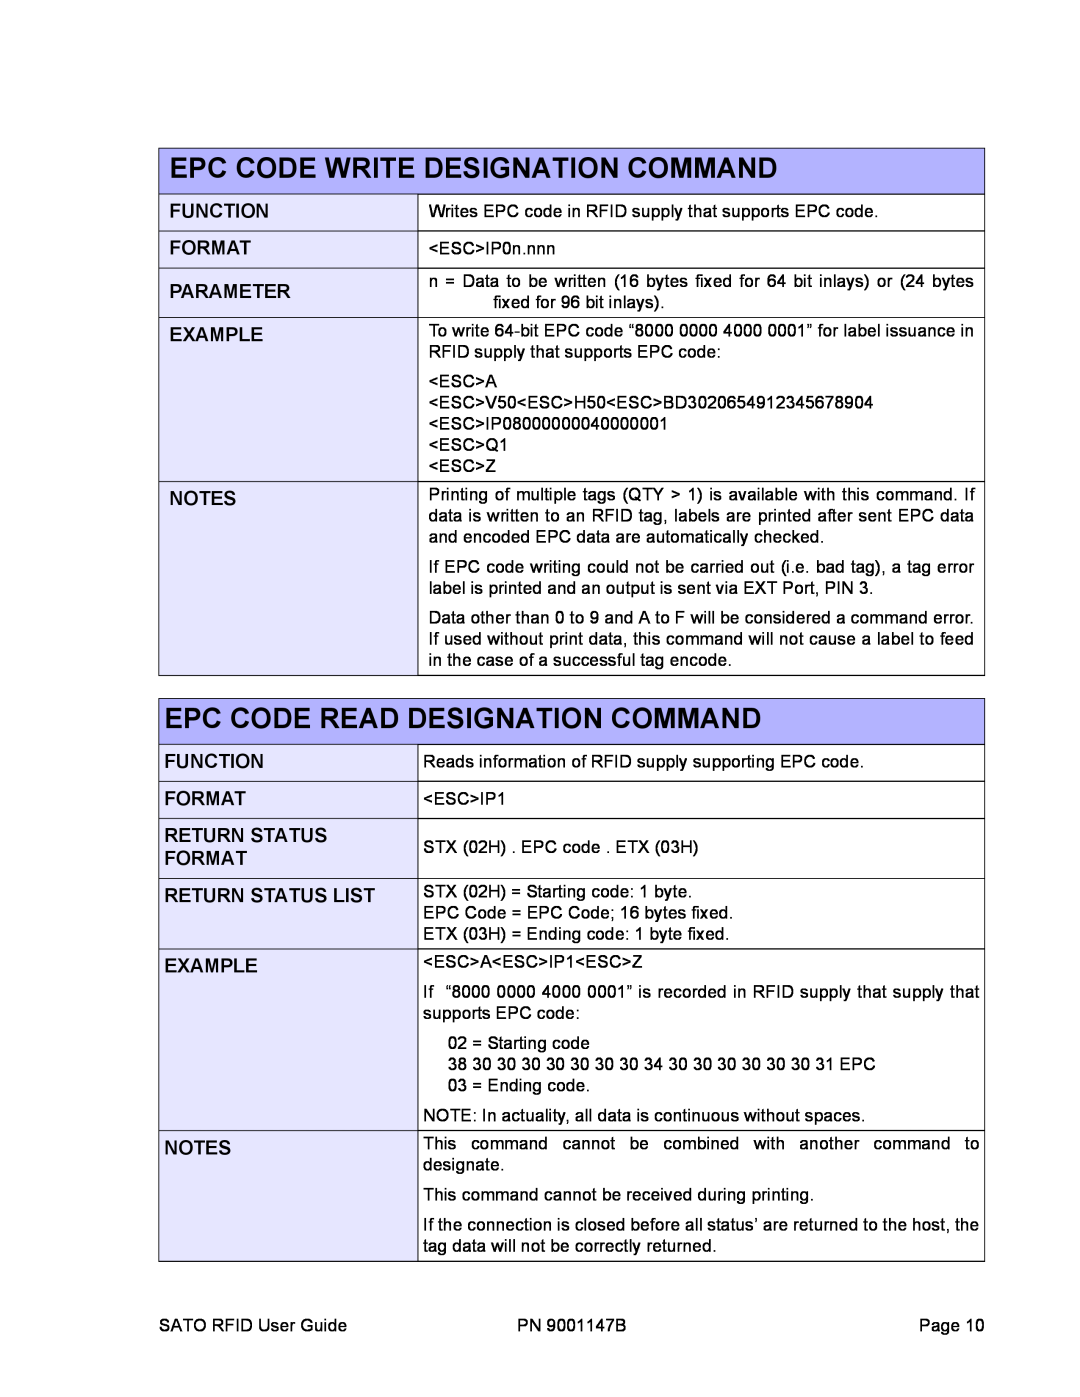 SATO 9001147B Epc Code Write Designation Command, Epc Code Read Designation Command, Function, Format, Parameter, Example 